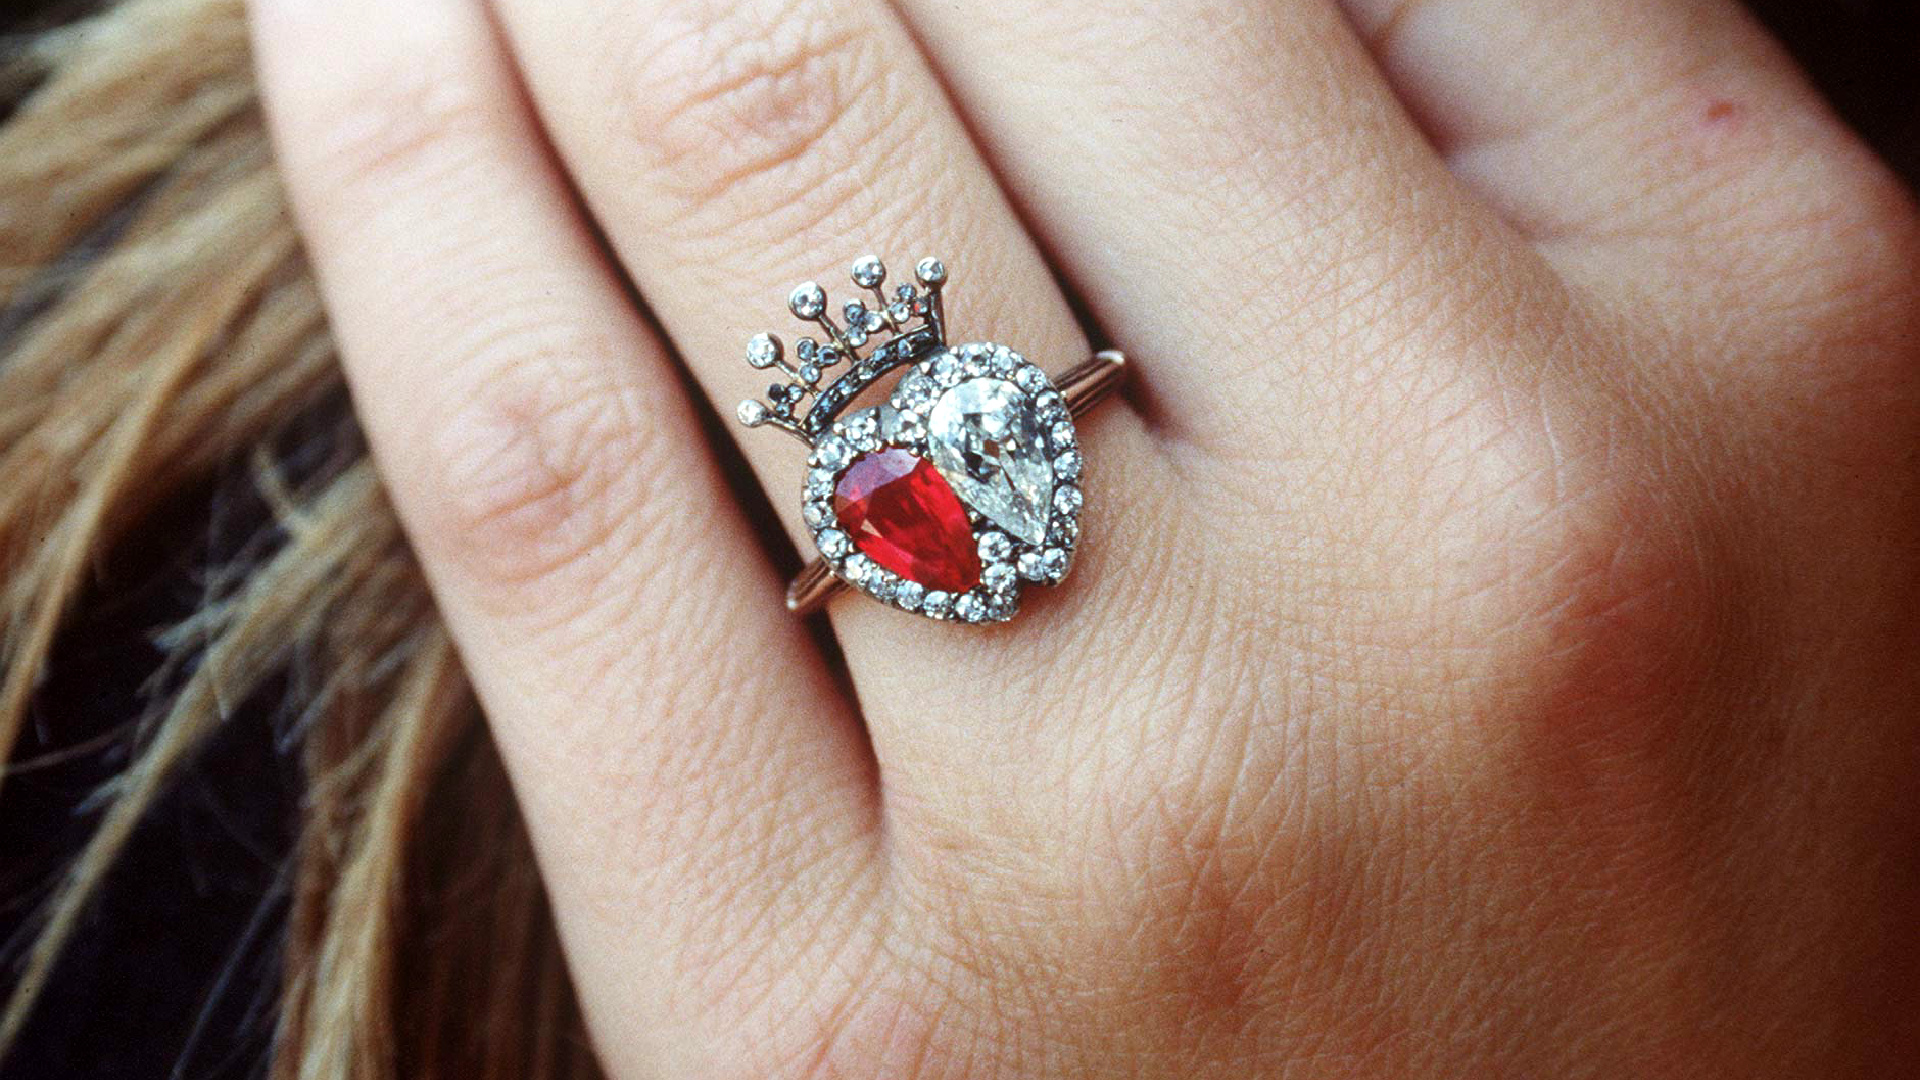 <p>Un primer plano del anillo de diamantes y rubíes rematado con una corona de diamantes que luce Victoria Lockwood. Aunque el estilo no es para todos, está claro que se trata de una joya que llama la atención. De hecho, se parece mucho al anillo de la reina Victoria, con el que tiene muchas similitudes.</p>